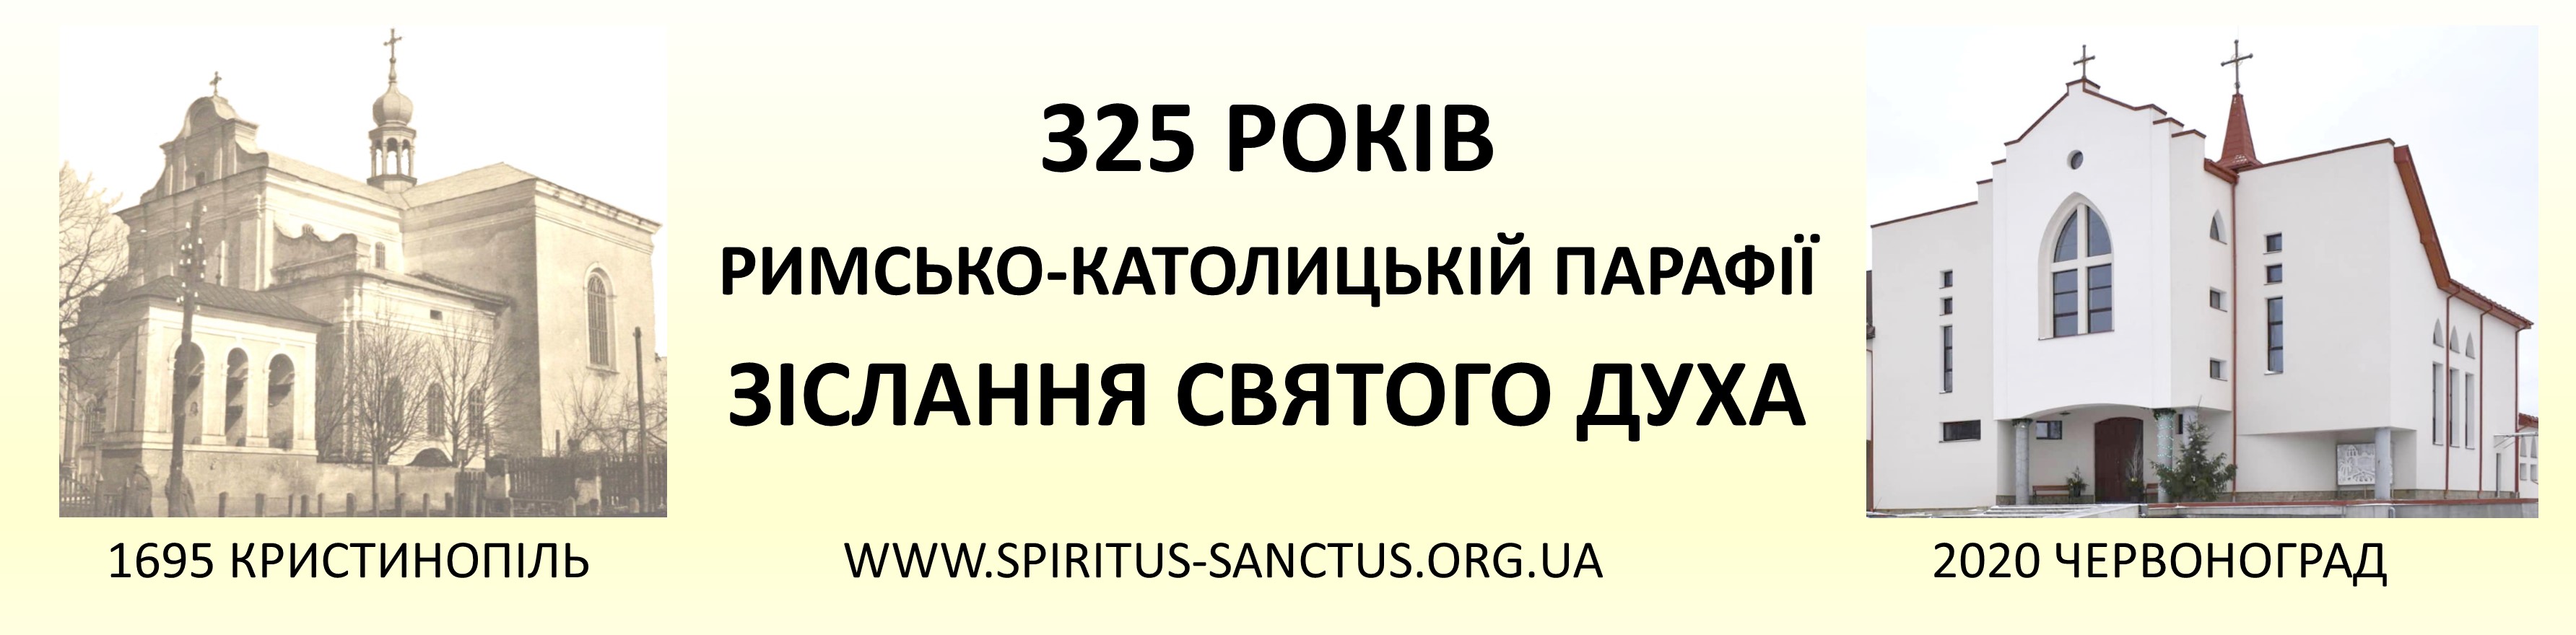 http://ua.spiritus-sanctus.org.ua